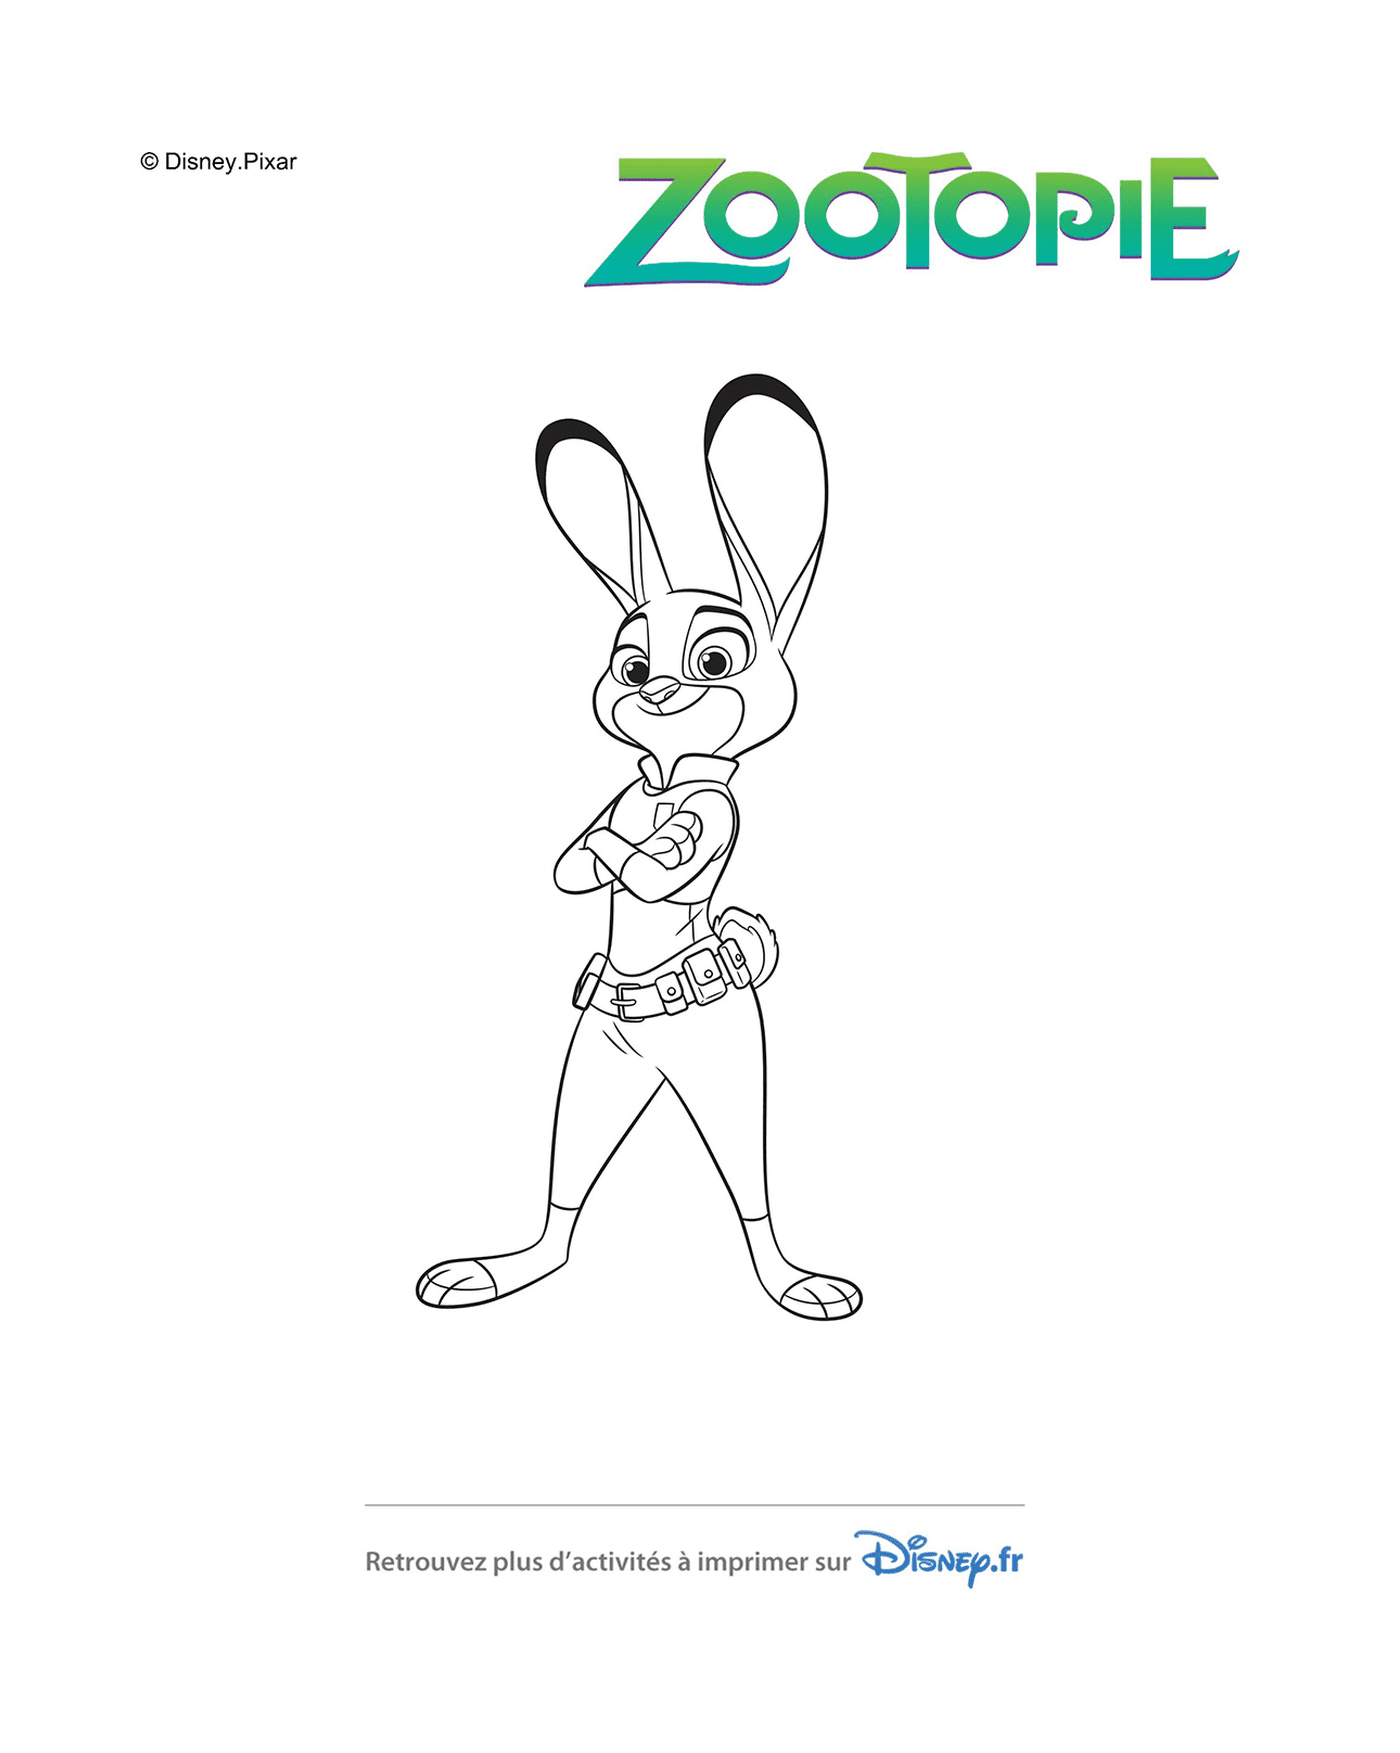   Judy Hopps, la police intrépide de Zootopie de Disney 